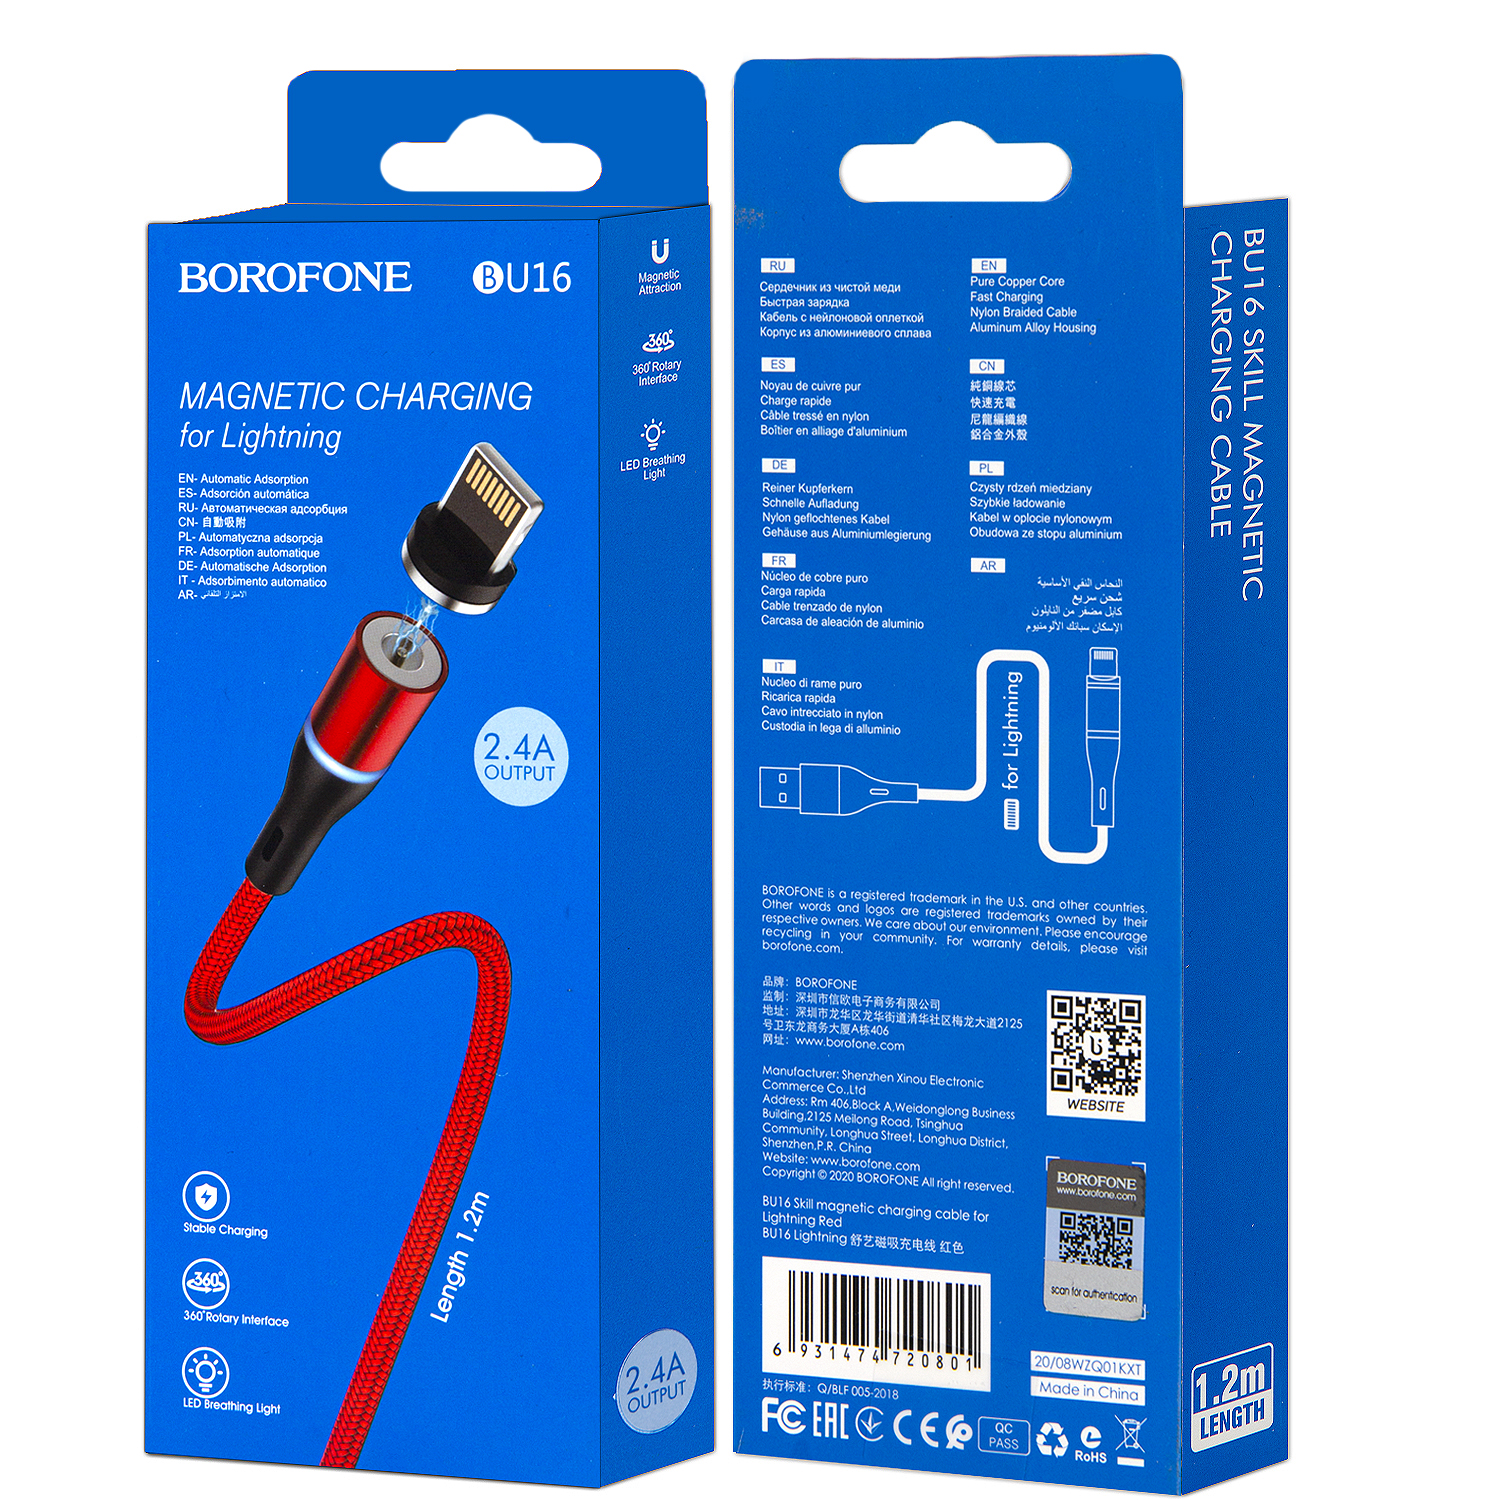 * Кабель BU16 USB Lightning 1.2M магнитный Borofone черный с красным